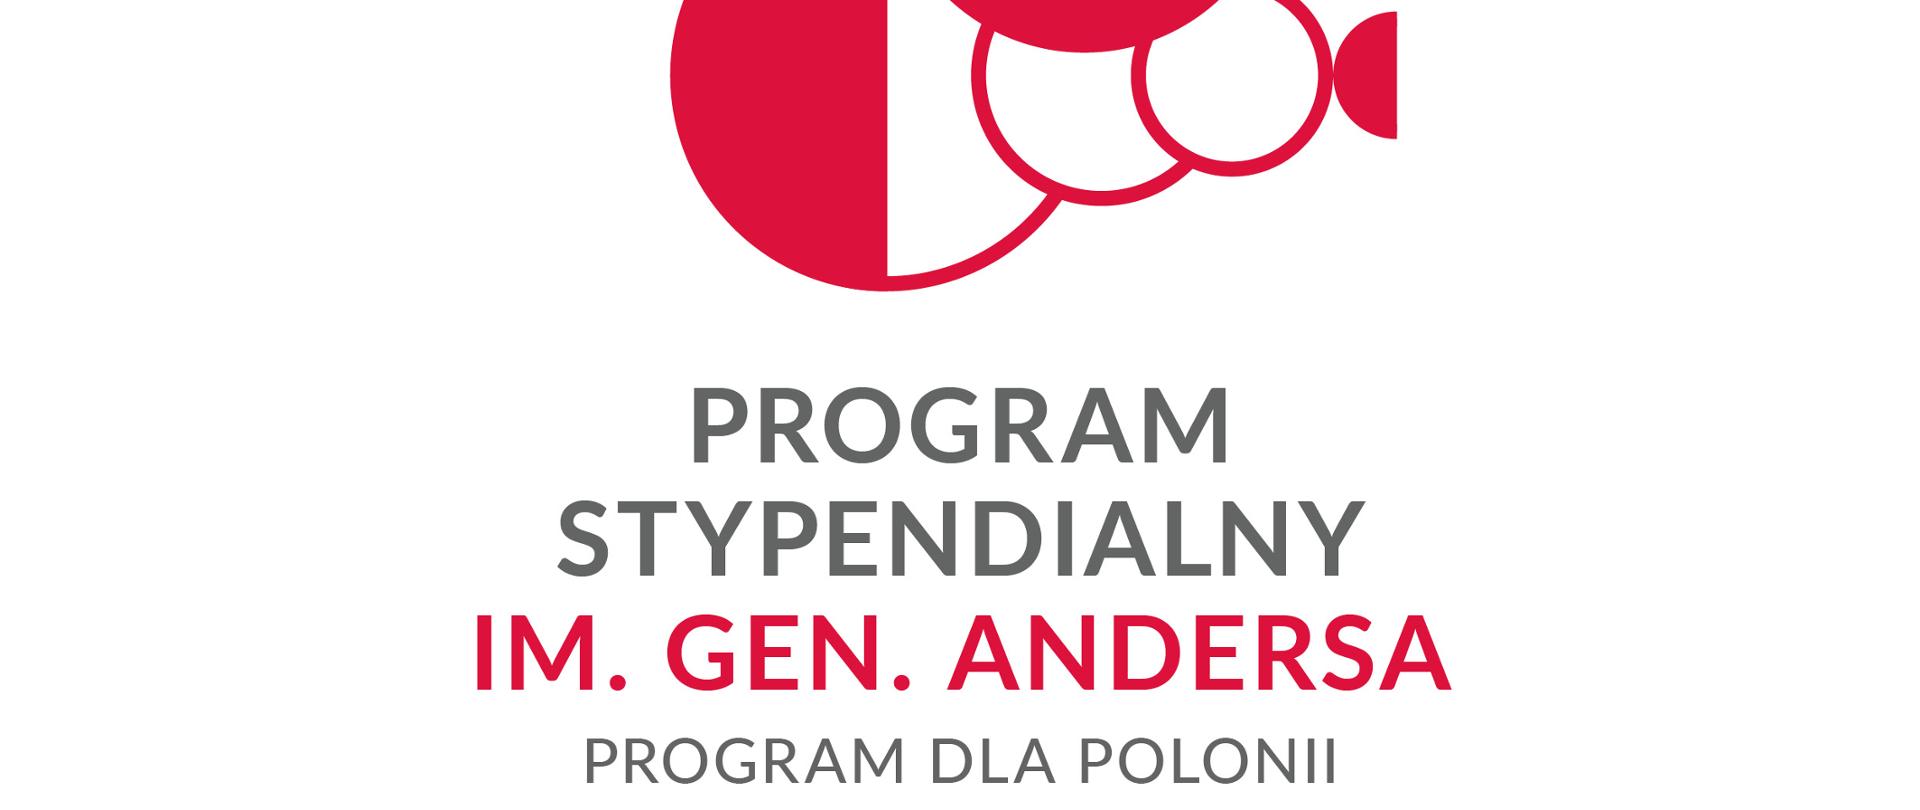 Program stypendialny im. gen. Władysława Andersa